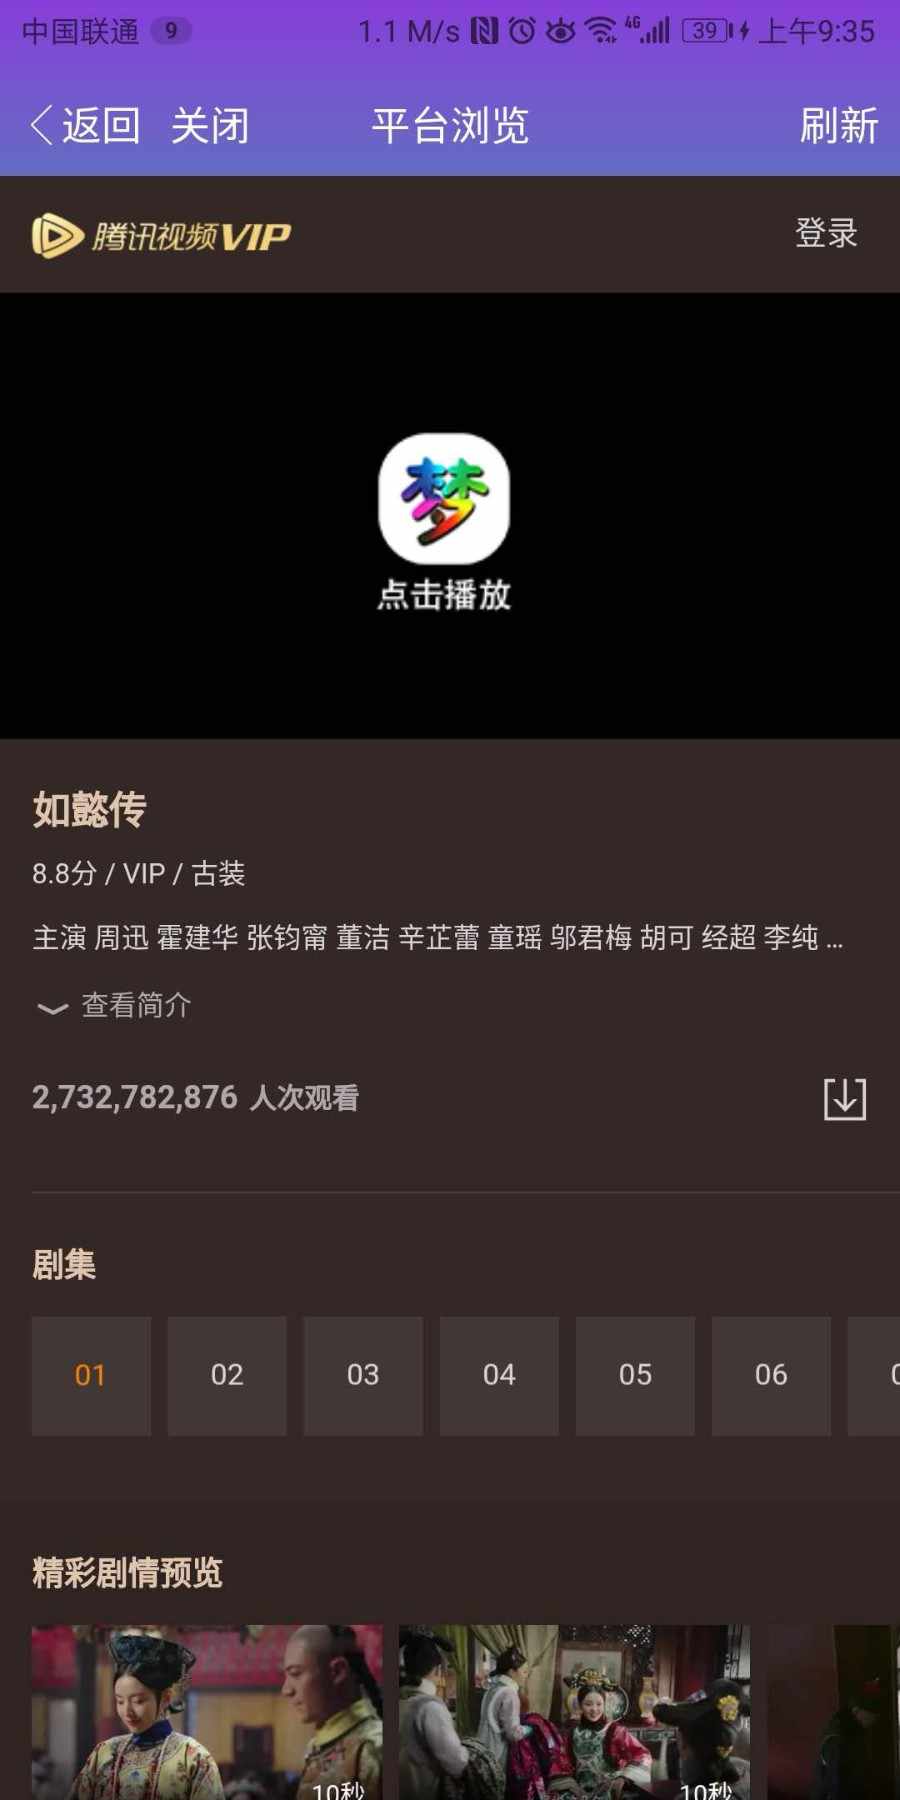 【9月最新二开版】全网最新梦娱聚合双端App~~~